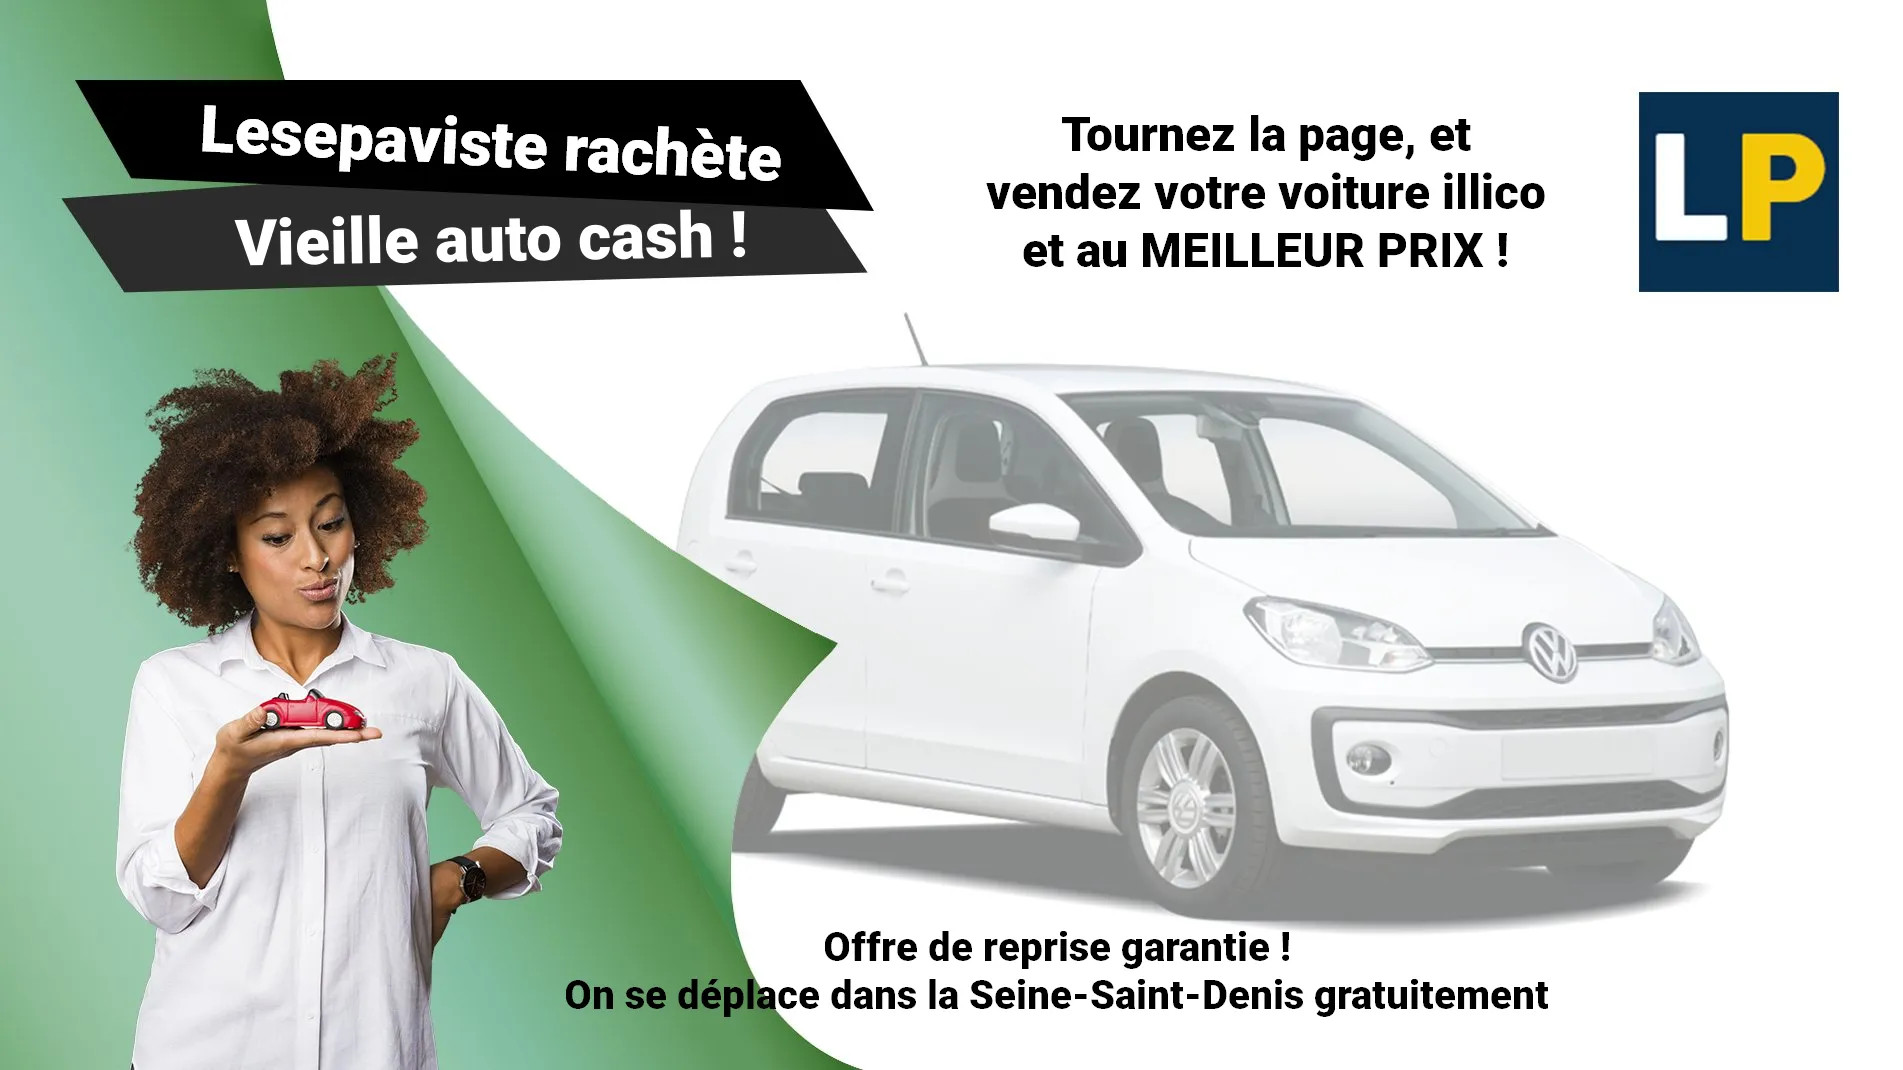 Reprise, rachat de voiture d'occasion dans la Seine-Saint-Denis